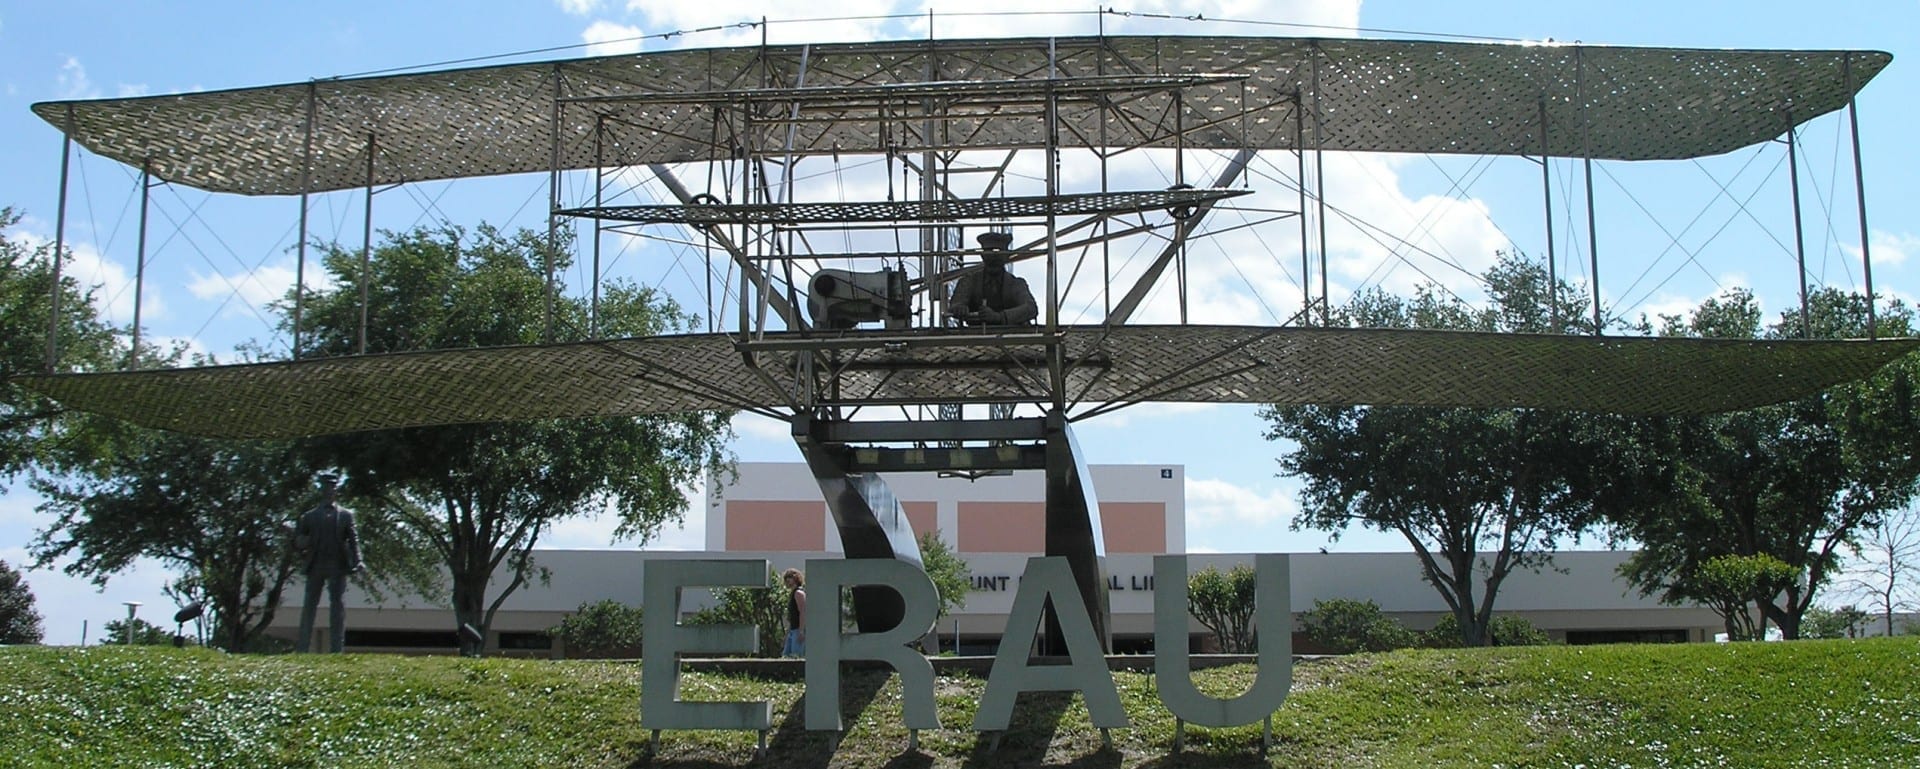 La estatua de tamaño real del Volador Wright en el campus de la Universidad Aeronáutica Embry-Riddle. Daytona Beach FL Estados Unidos